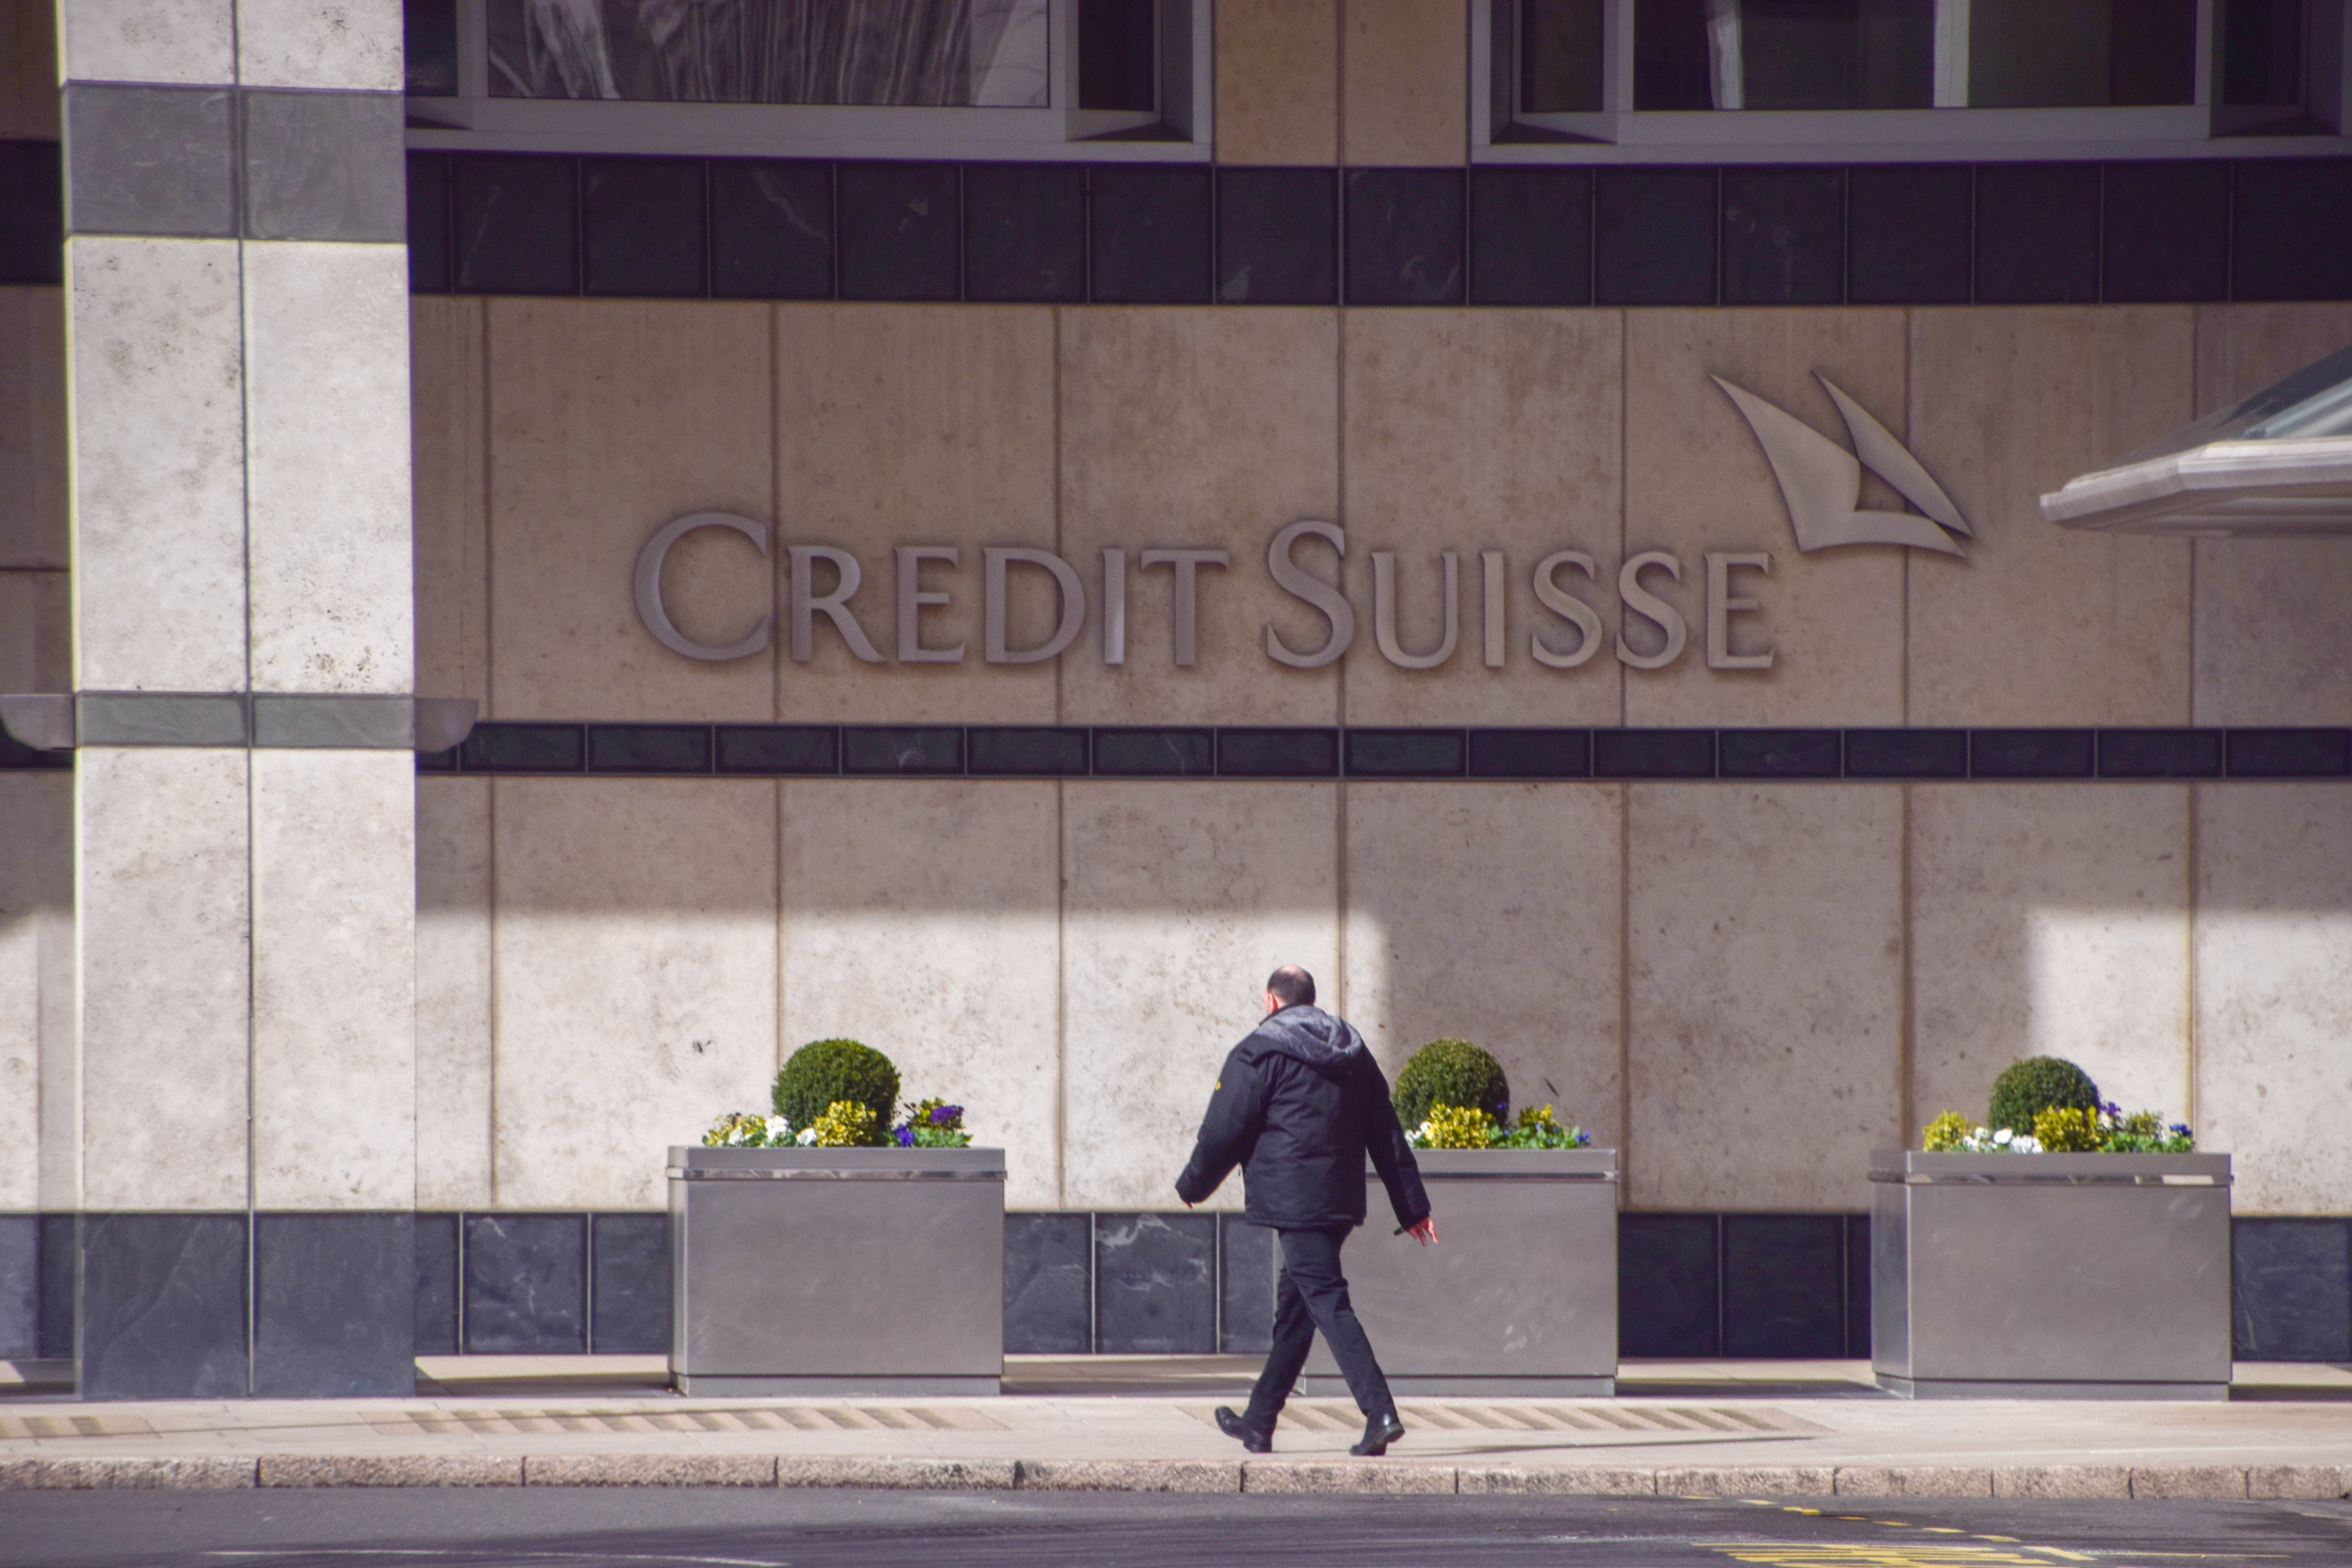 Dimiteix el president del Banc Nacional Saudita, que va desencadenar la caiguda de Credit Suisse